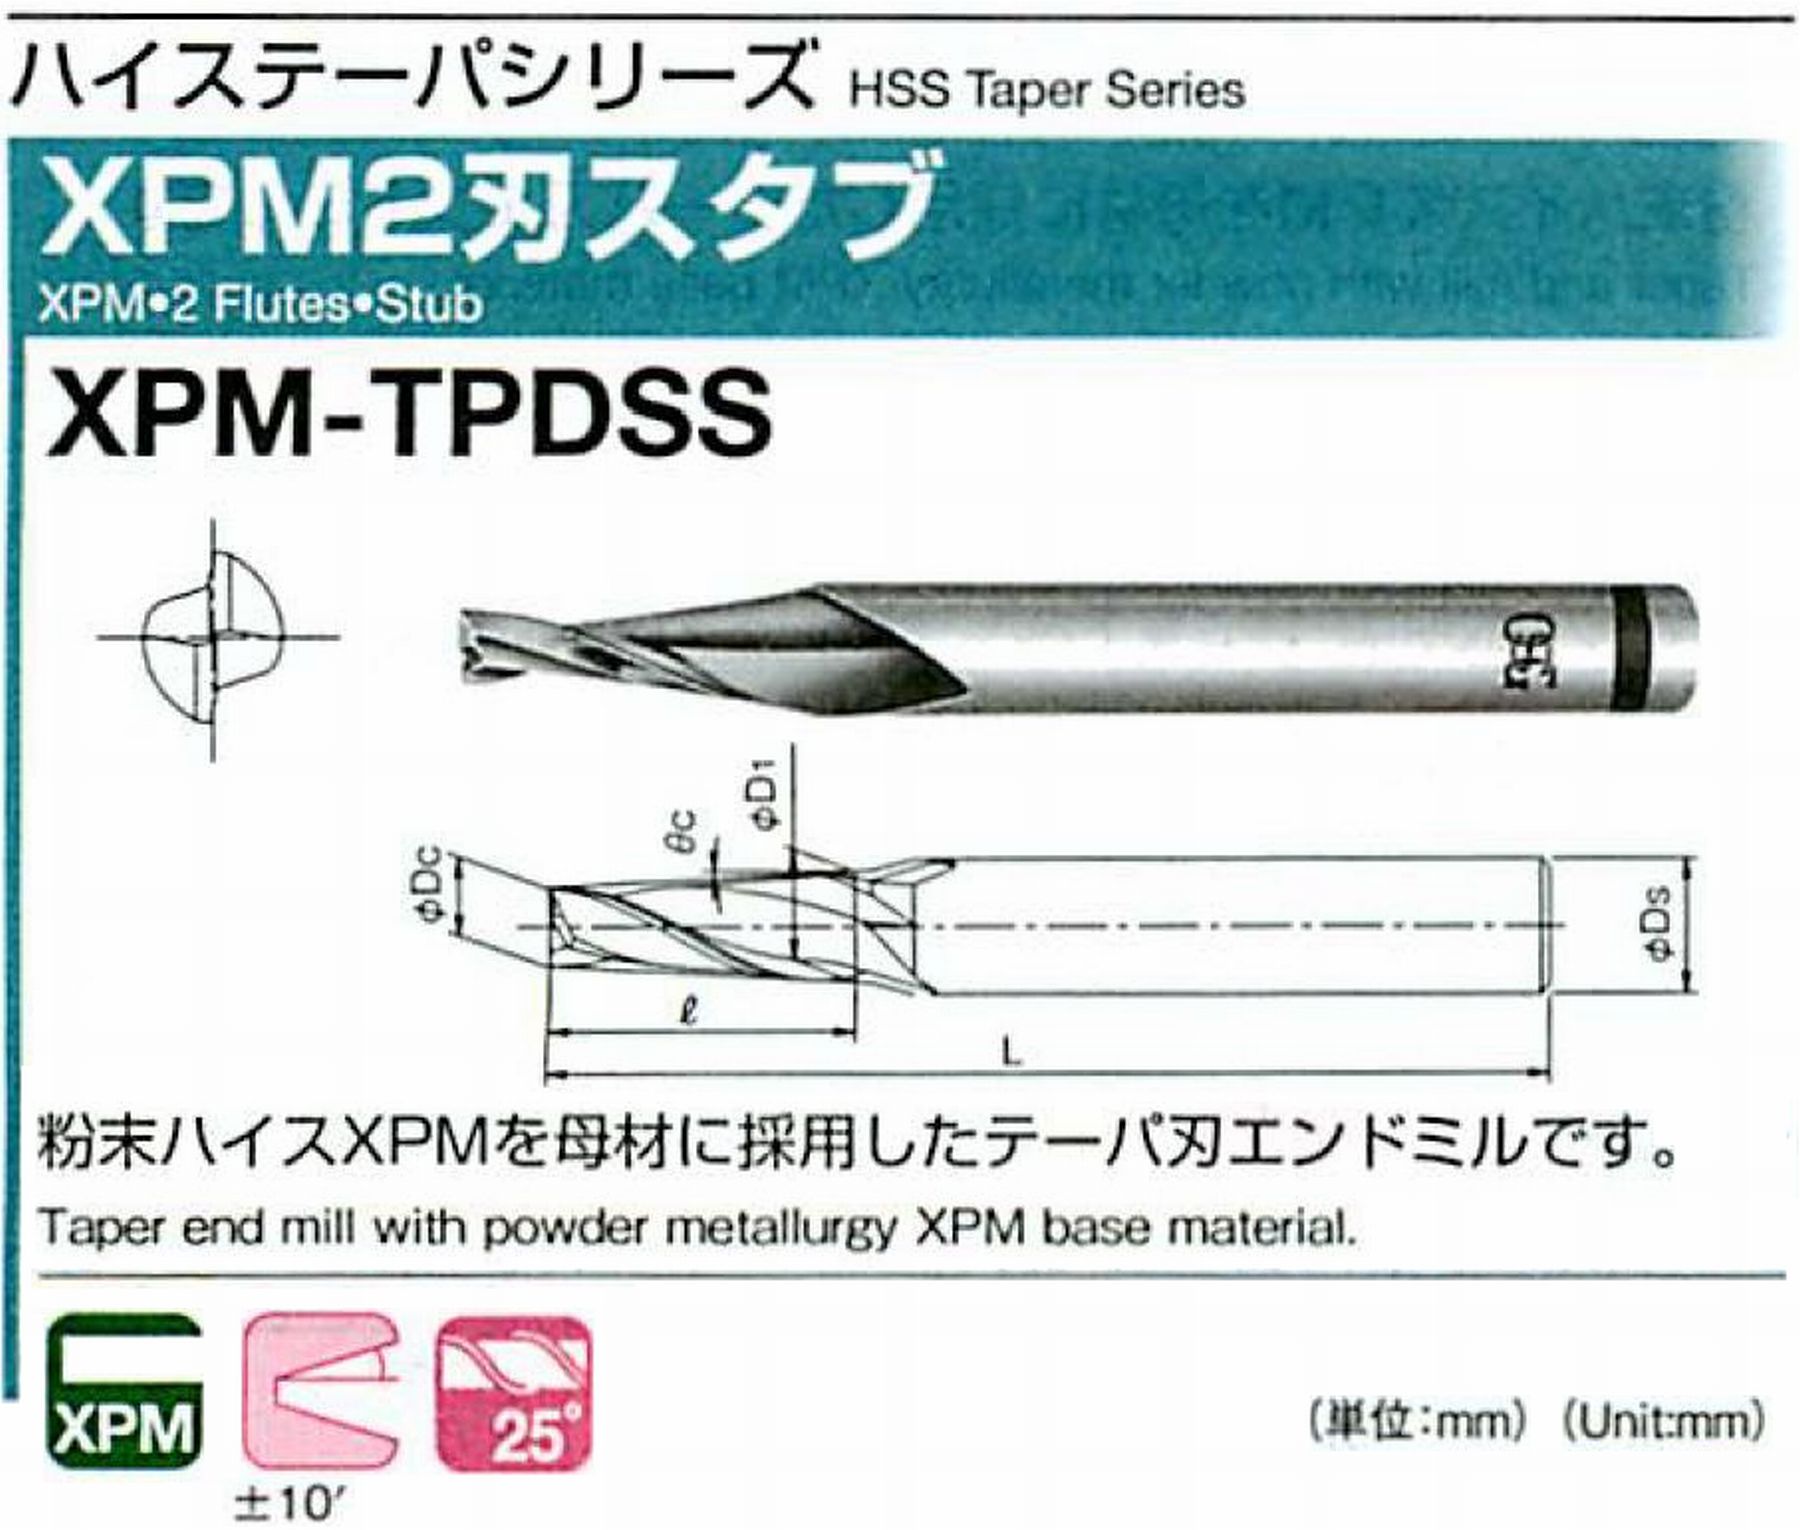 オーエスジー/OSG XPM2刃スタブ XPM-TPDSS 外径×刃部テーパ半角2.5×0.5° 全長49 刃長5 シャンク径6mm 大端径2.59